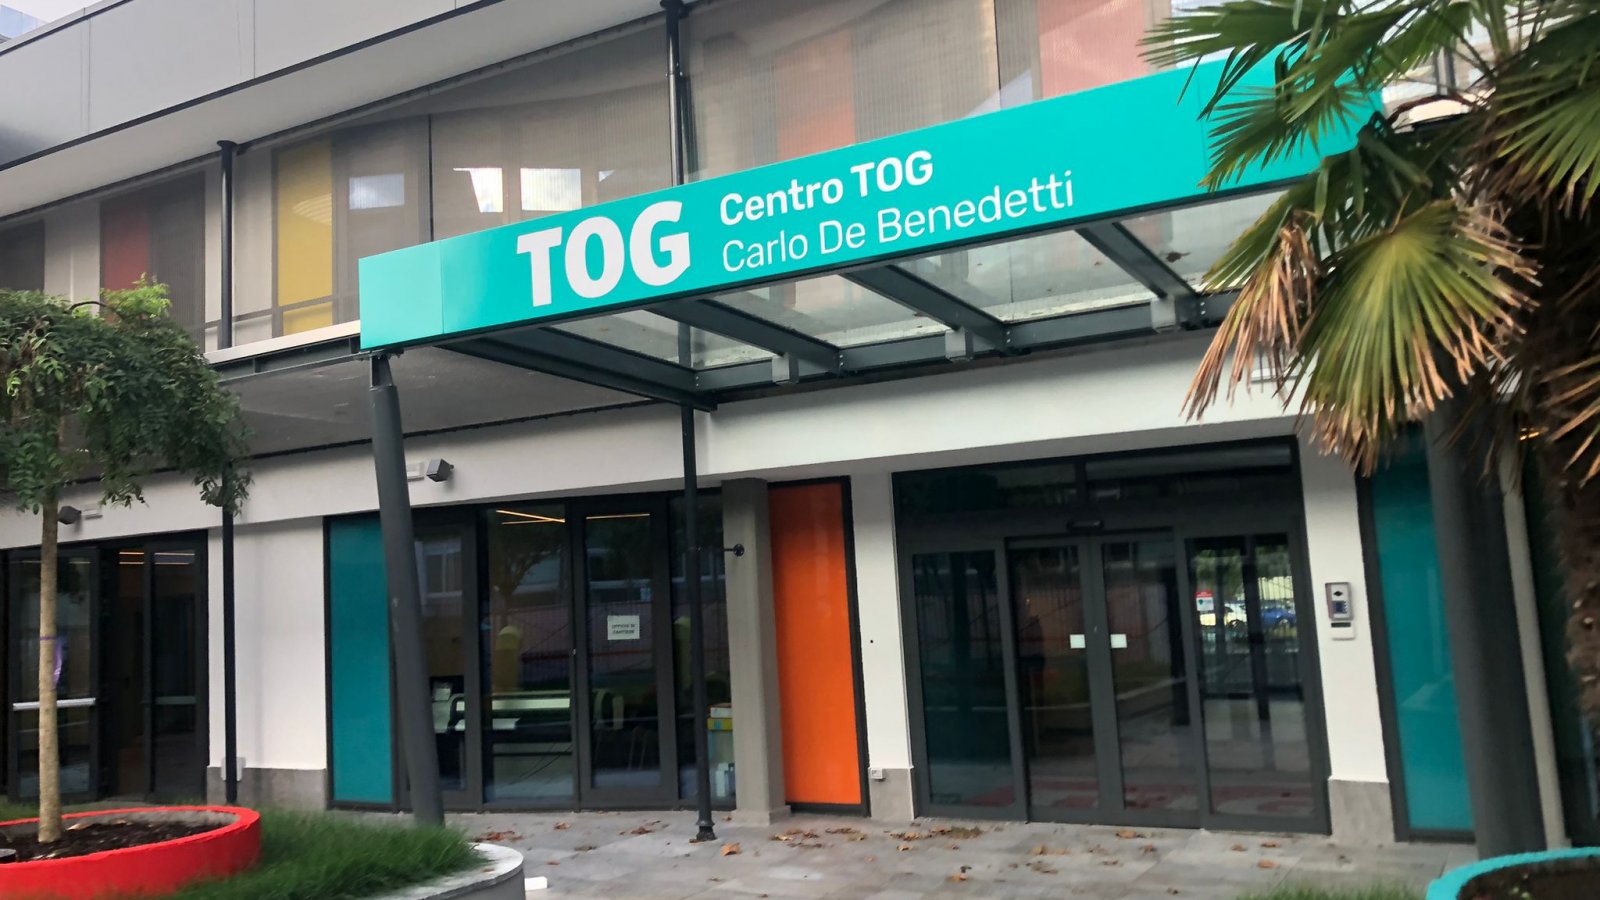 Si avvicina l’inaugurazione del centro TOG Carlo De Benedetti